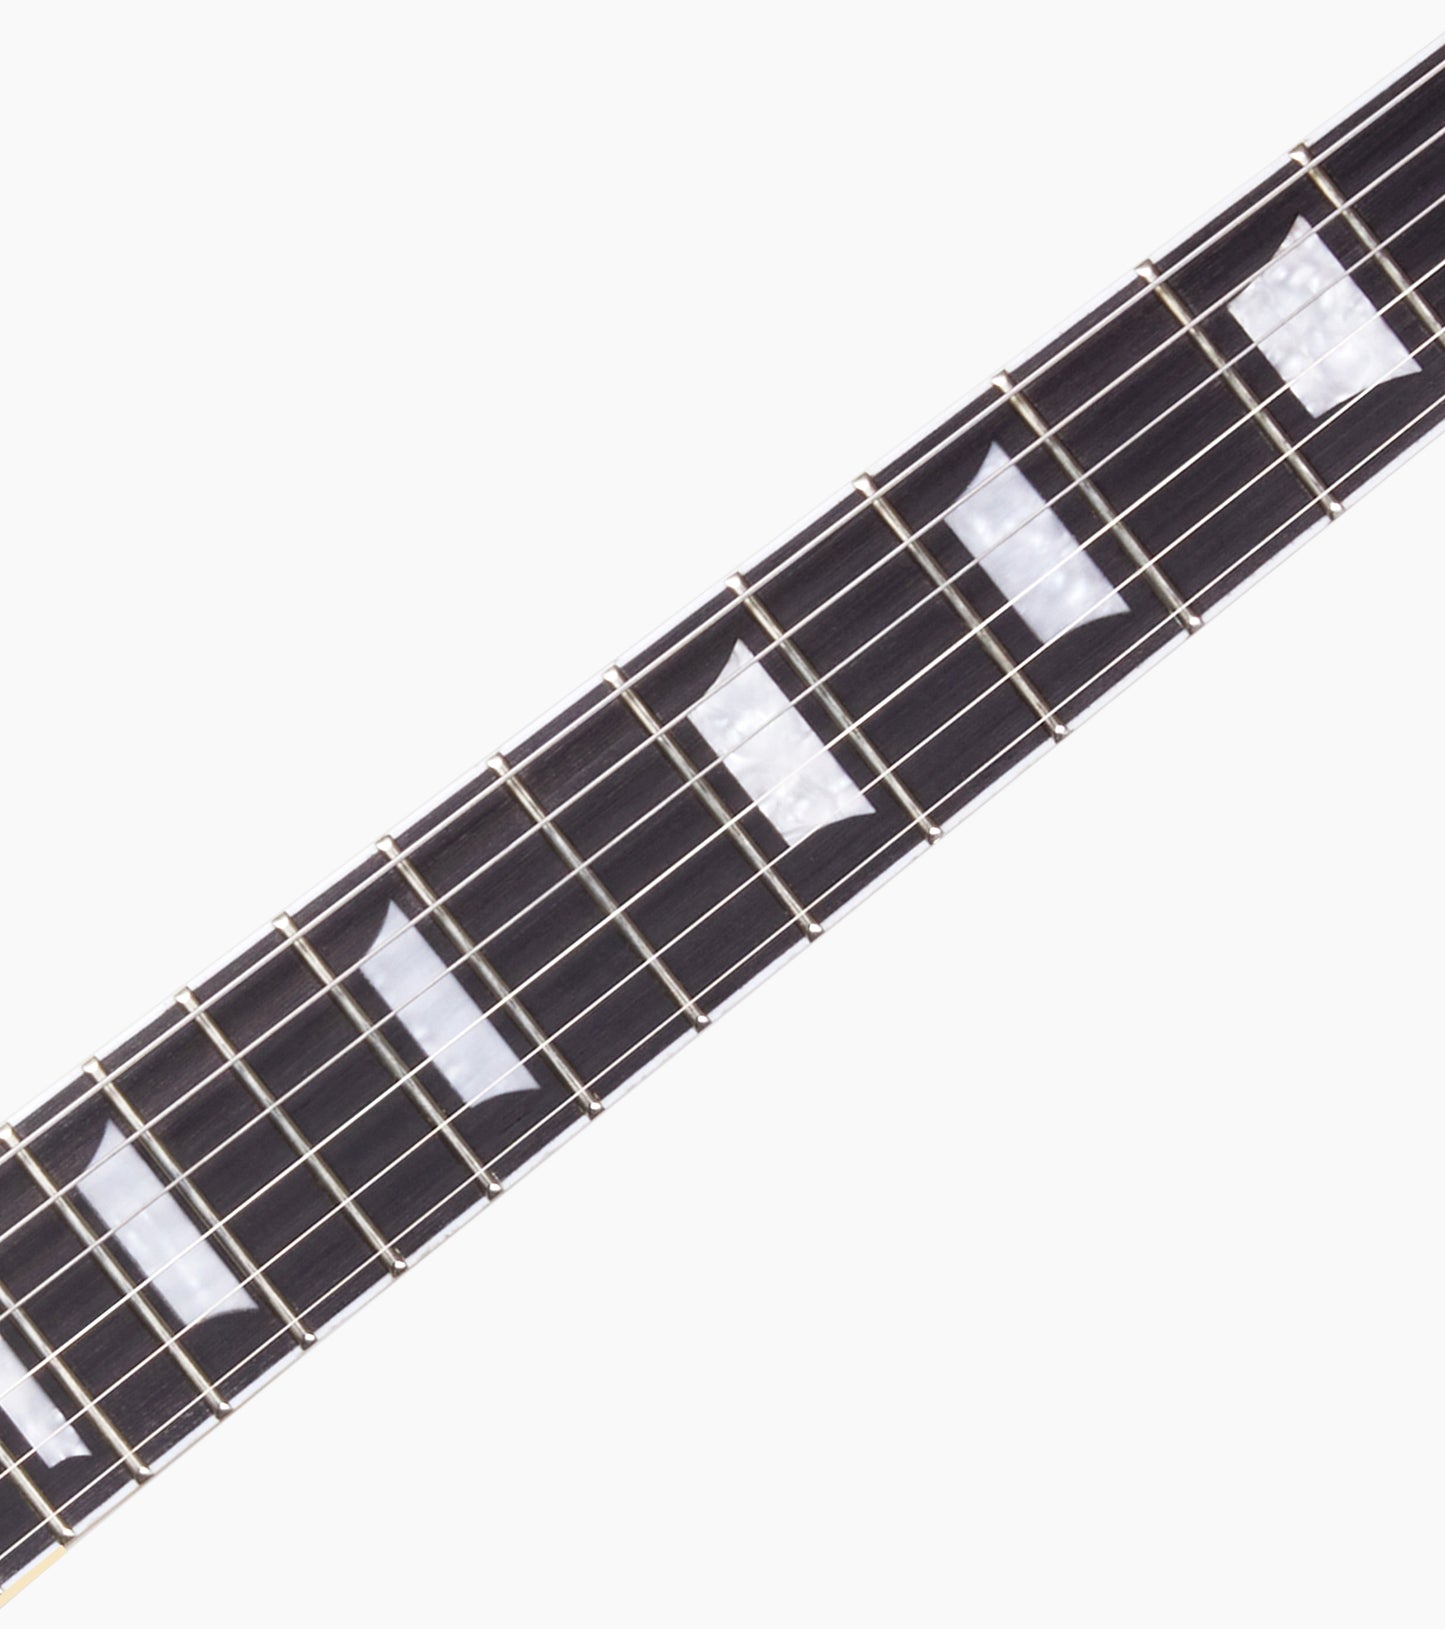 Les Paul Electric Guitar - Neck